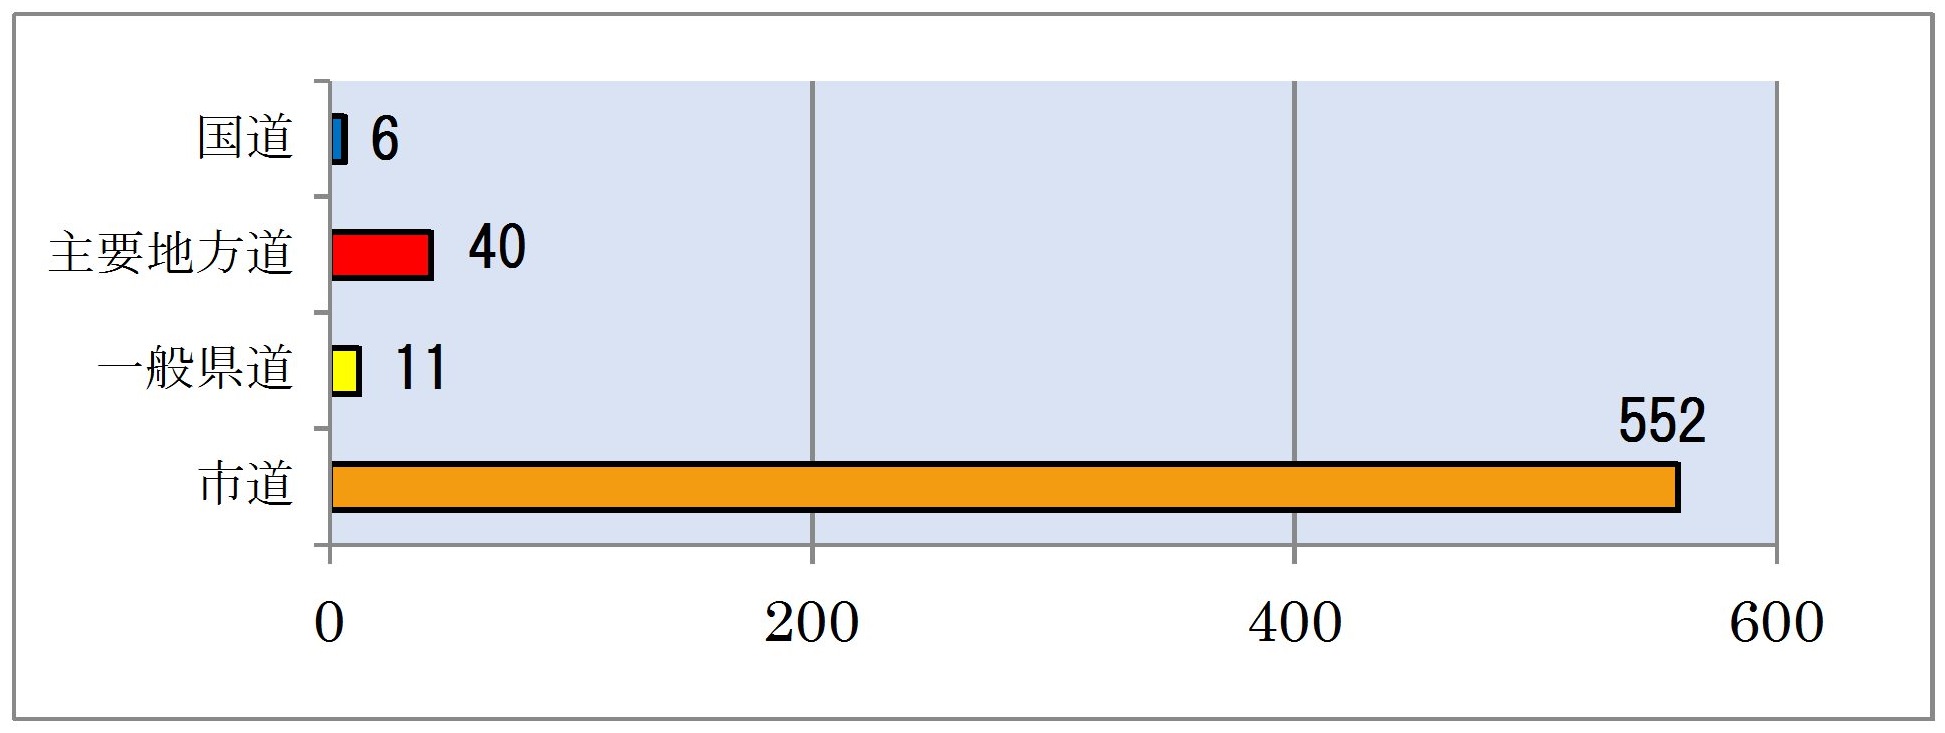 川崎市の管理の橋りょう数のグラフ